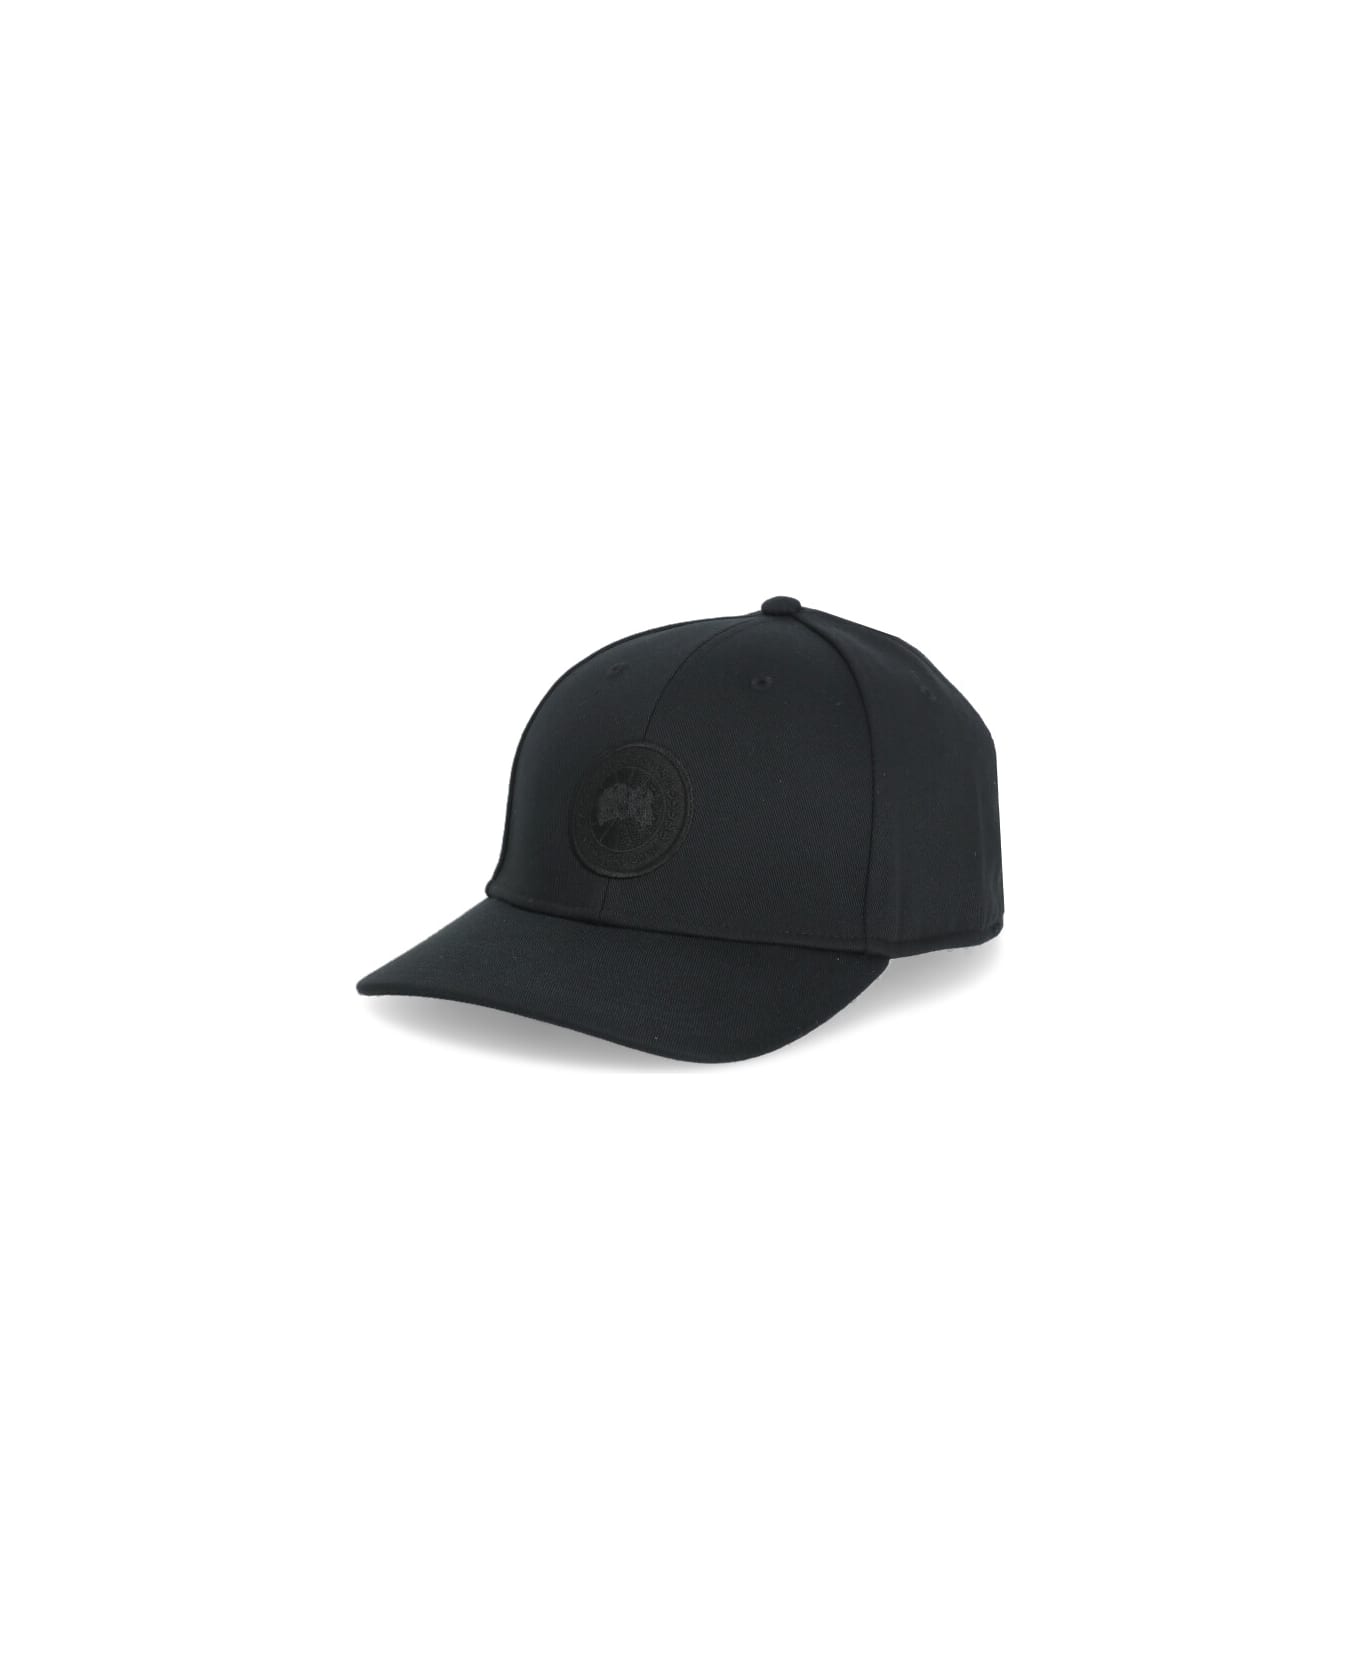 Canada Goose Tonal Baseball Cap - Black 帽子